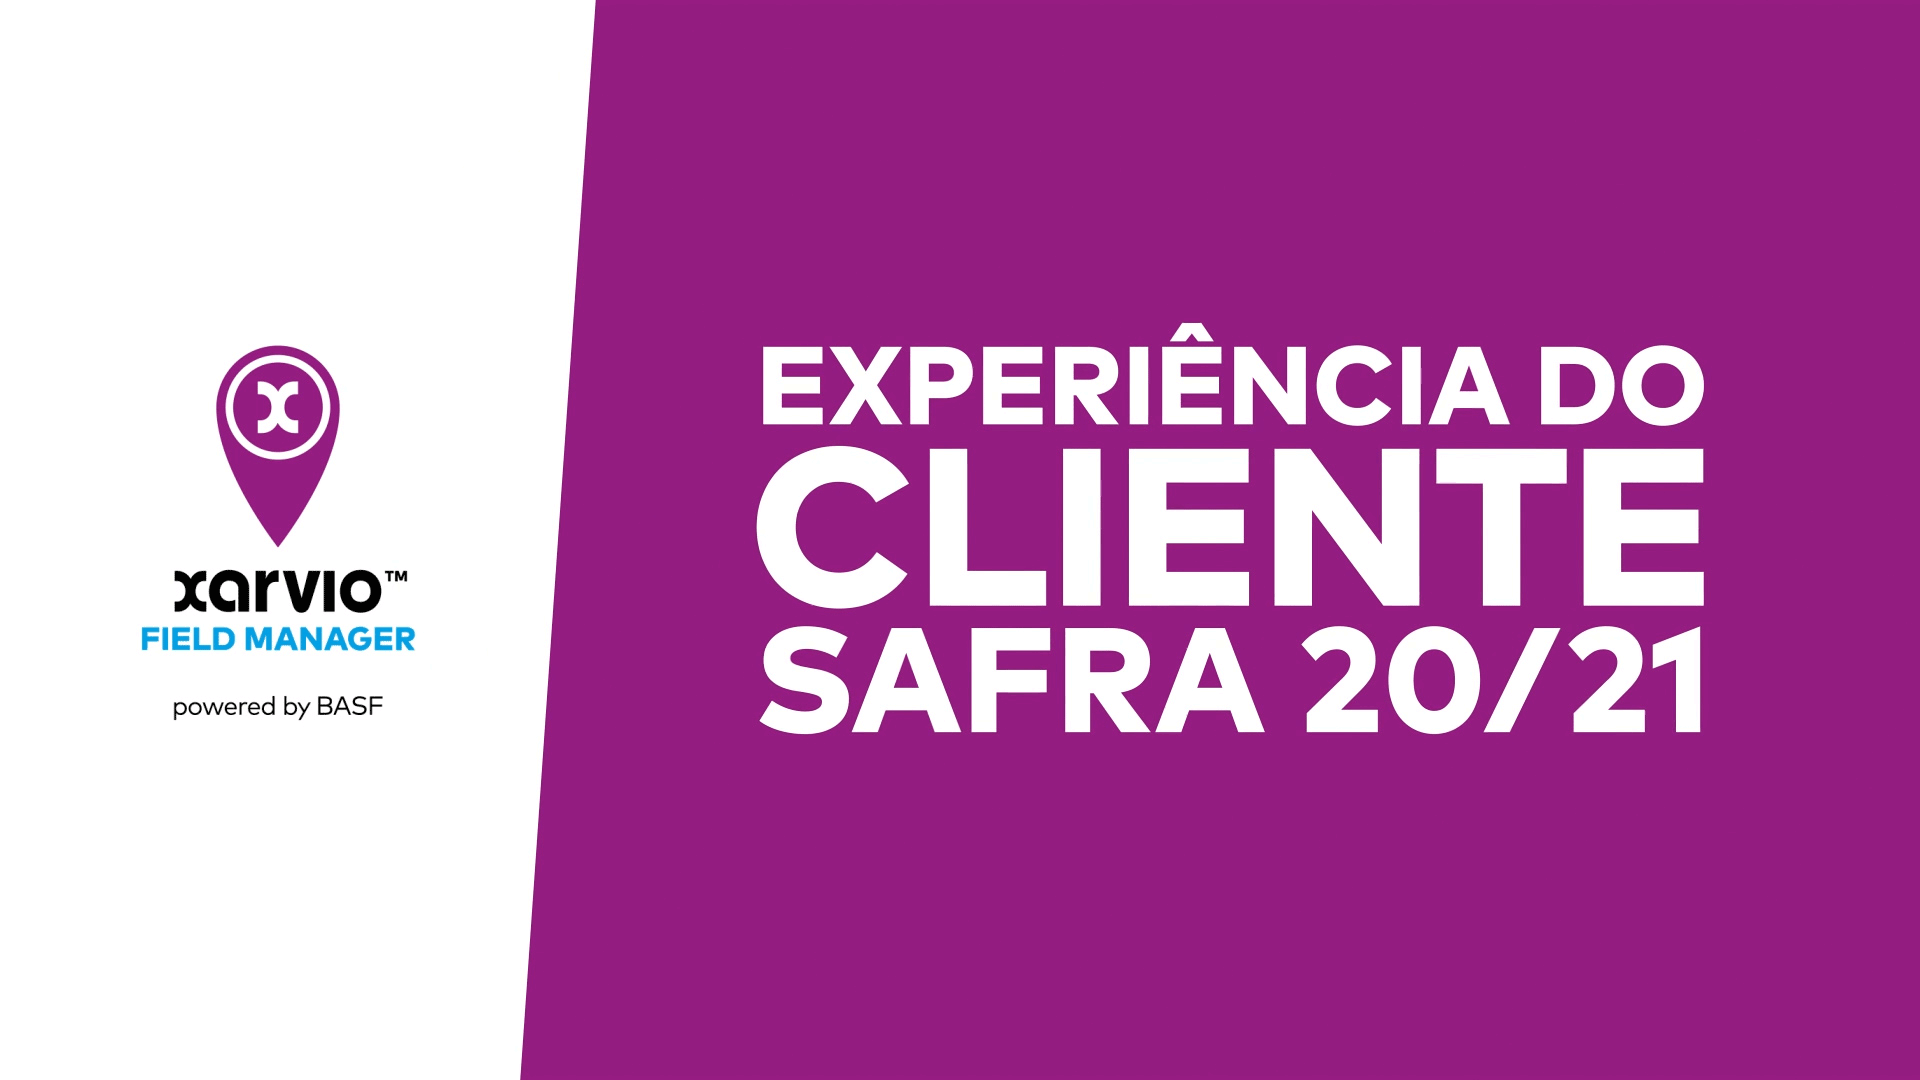 xarvio FIELD MANAGER - Experiência do Cliente Safra 20/21